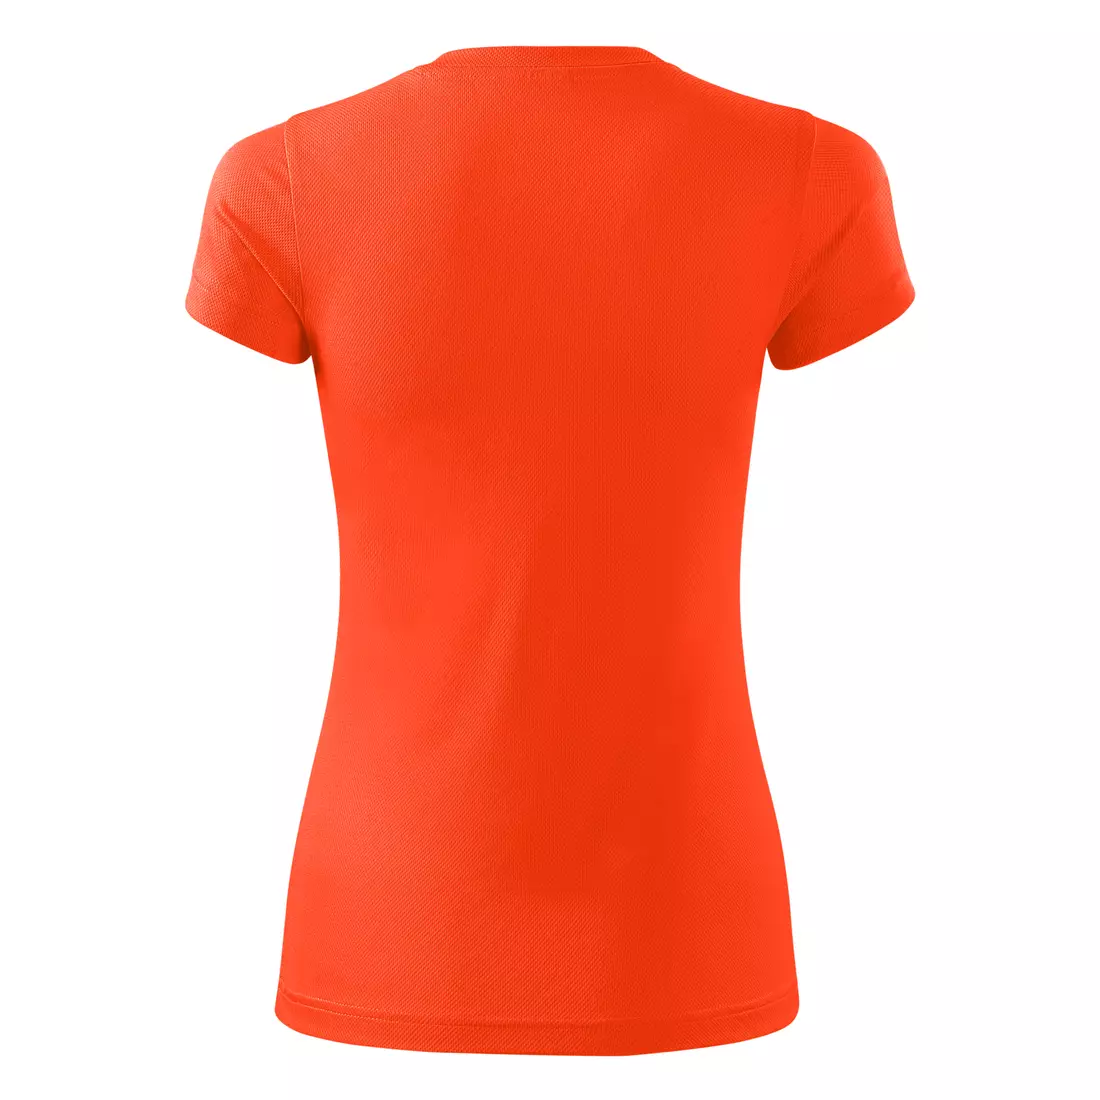 MALFINI FANTASY - Tricou sport pentru femei 100% poliester, portocaliu neon 1409112-140